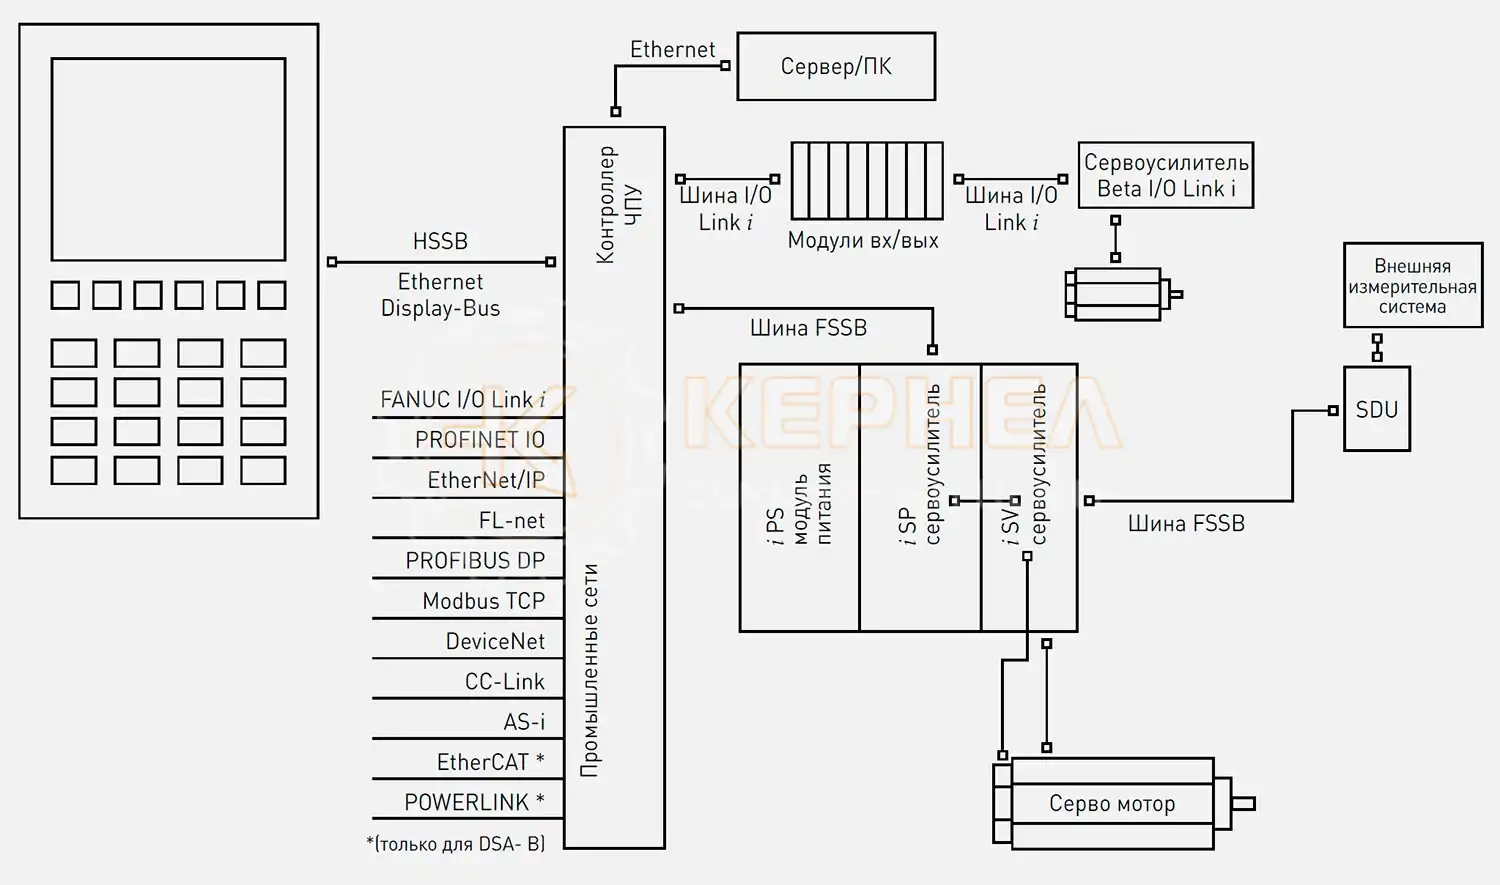 Блок-схема подкючения ЧПУ FANUC CNC 0i